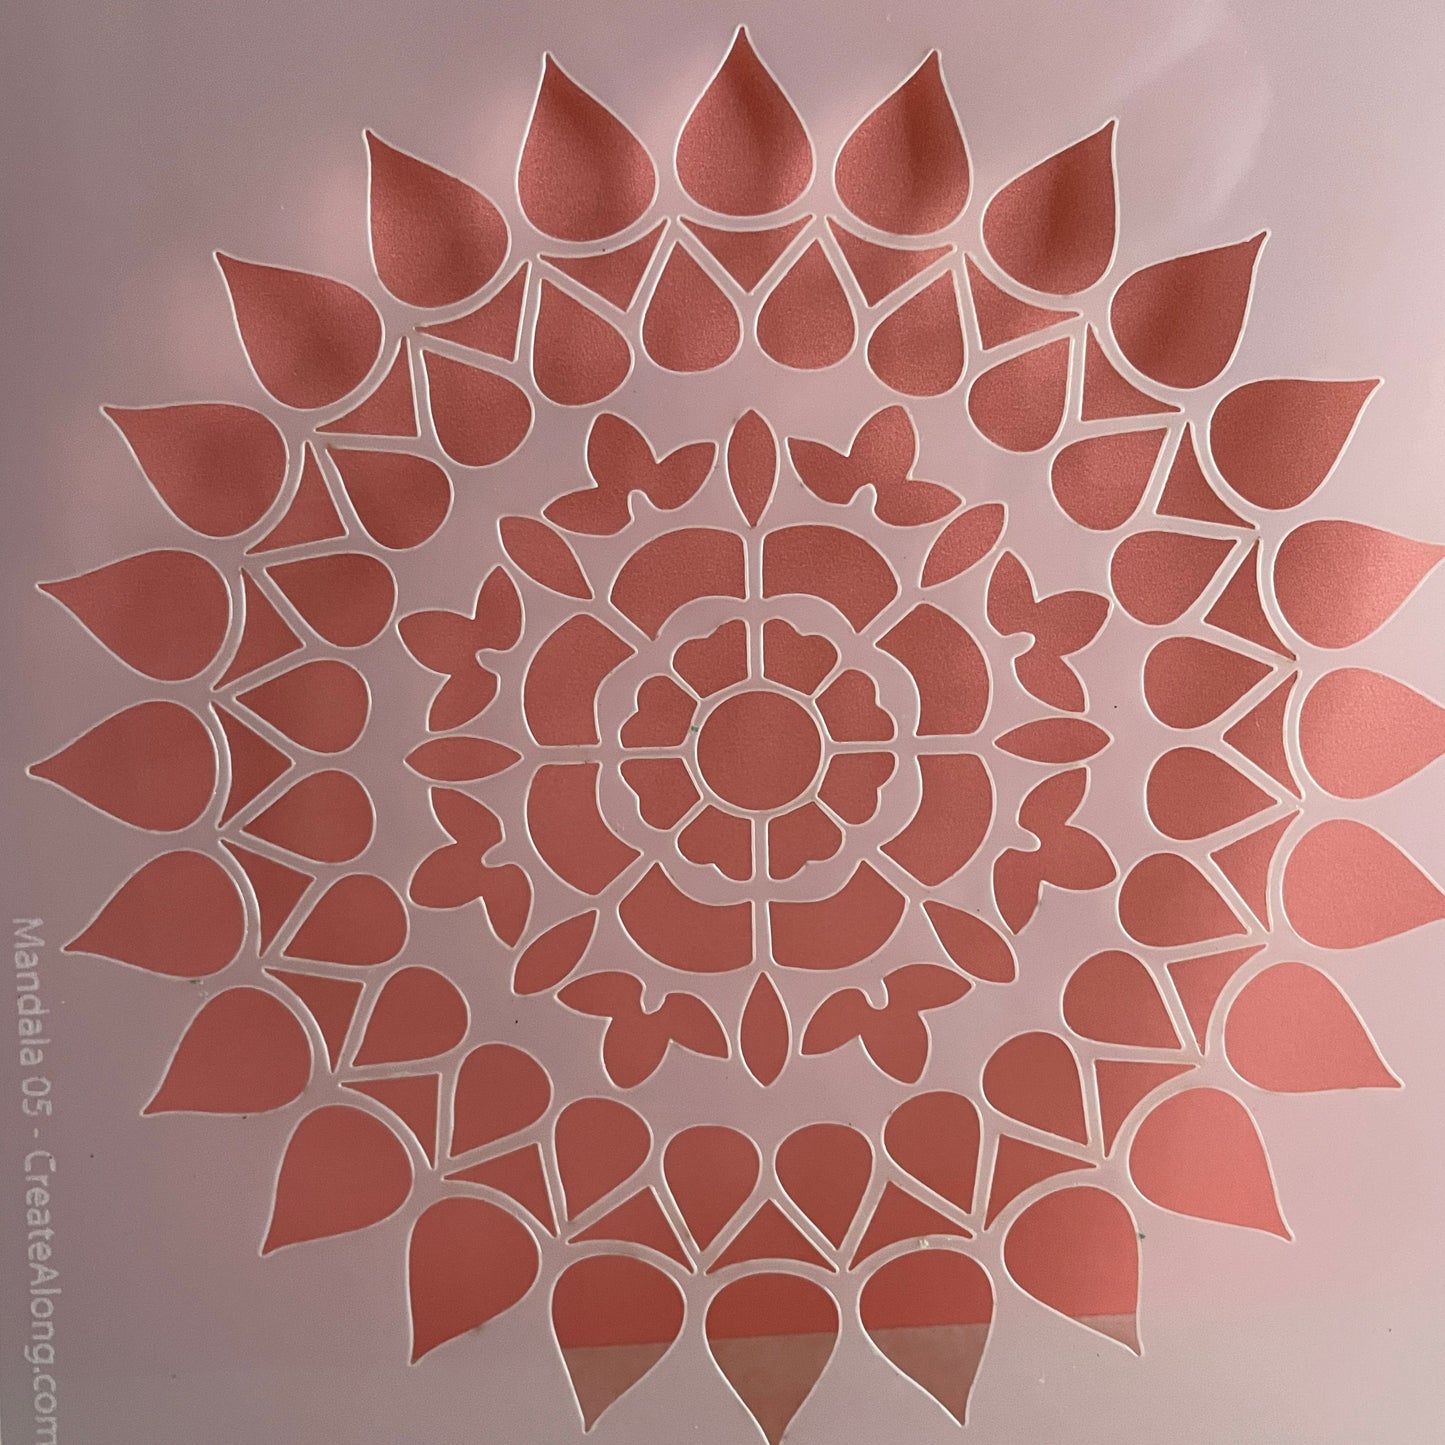 Mylar Mandala #05 floral stencil polymer clay trinket dish